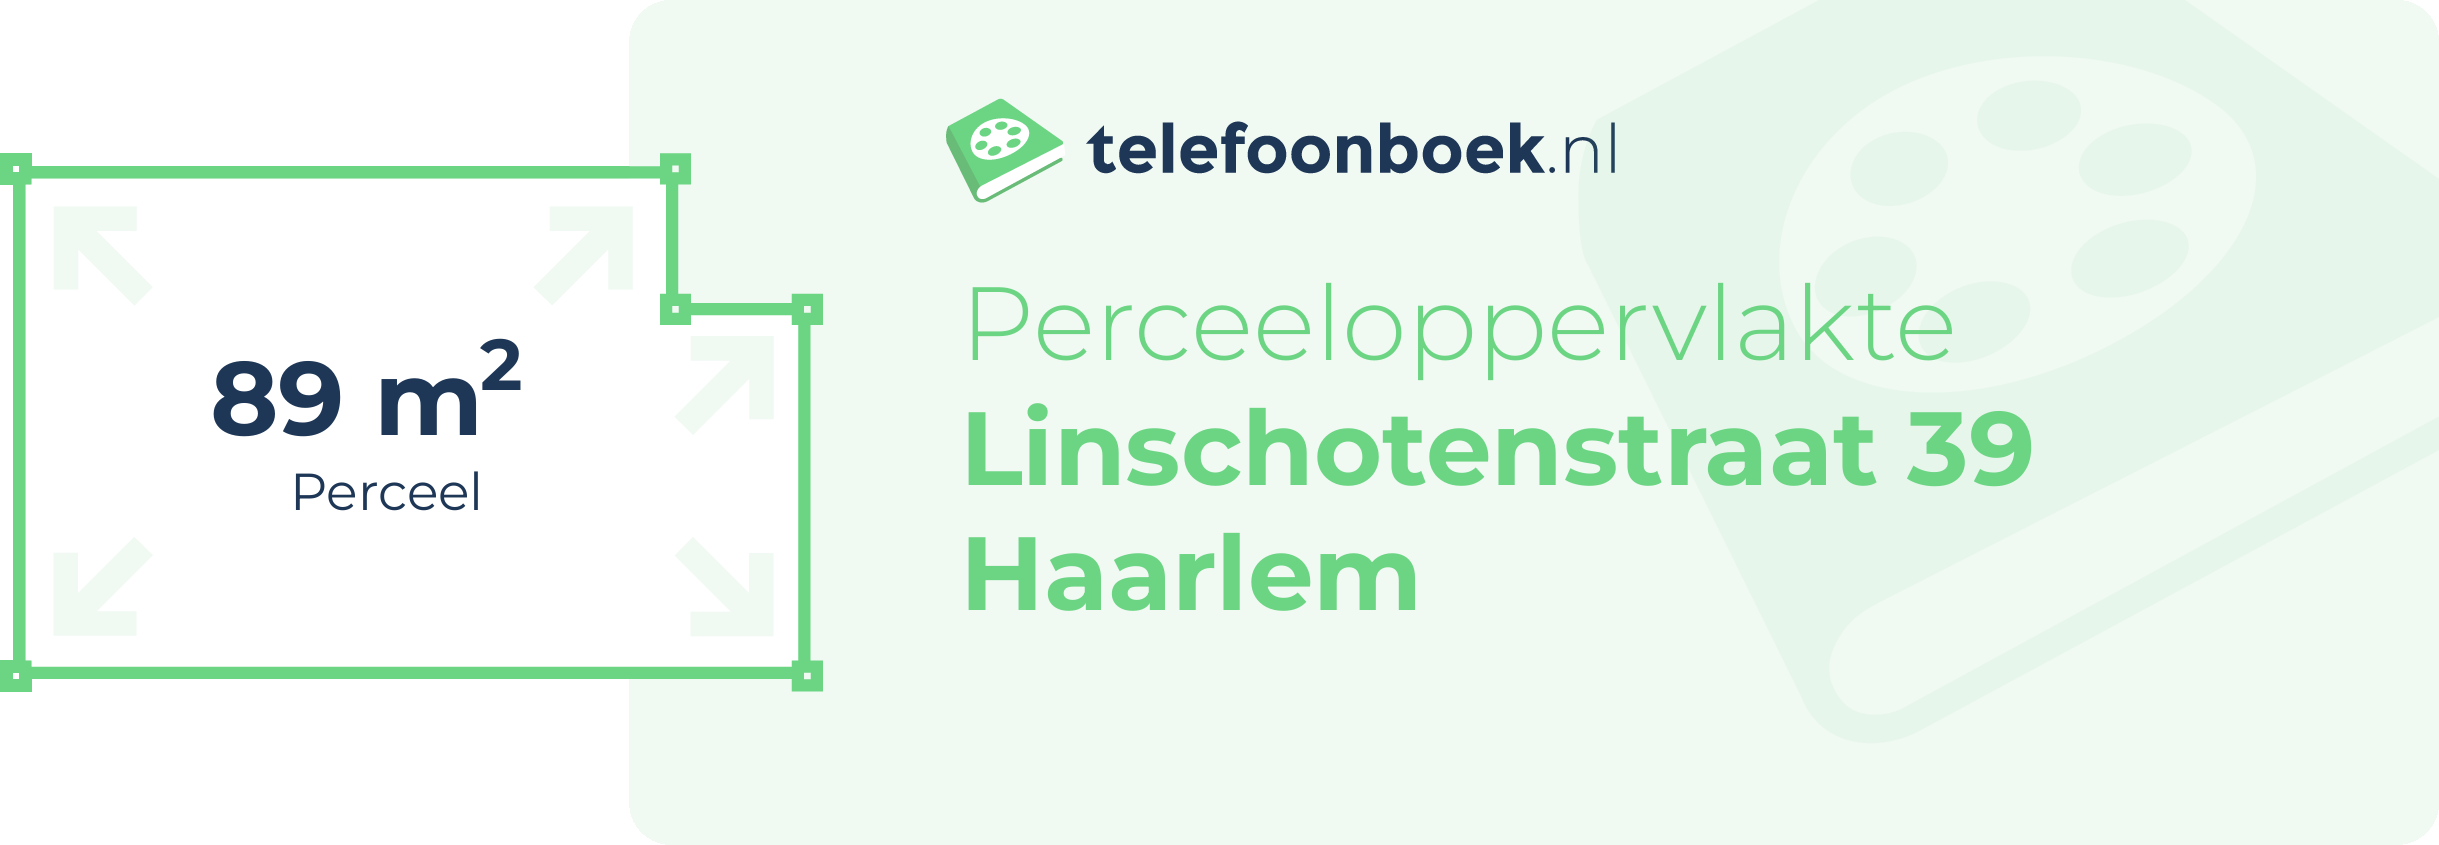 Perceeloppervlakte Linschotenstraat 39 Haarlem